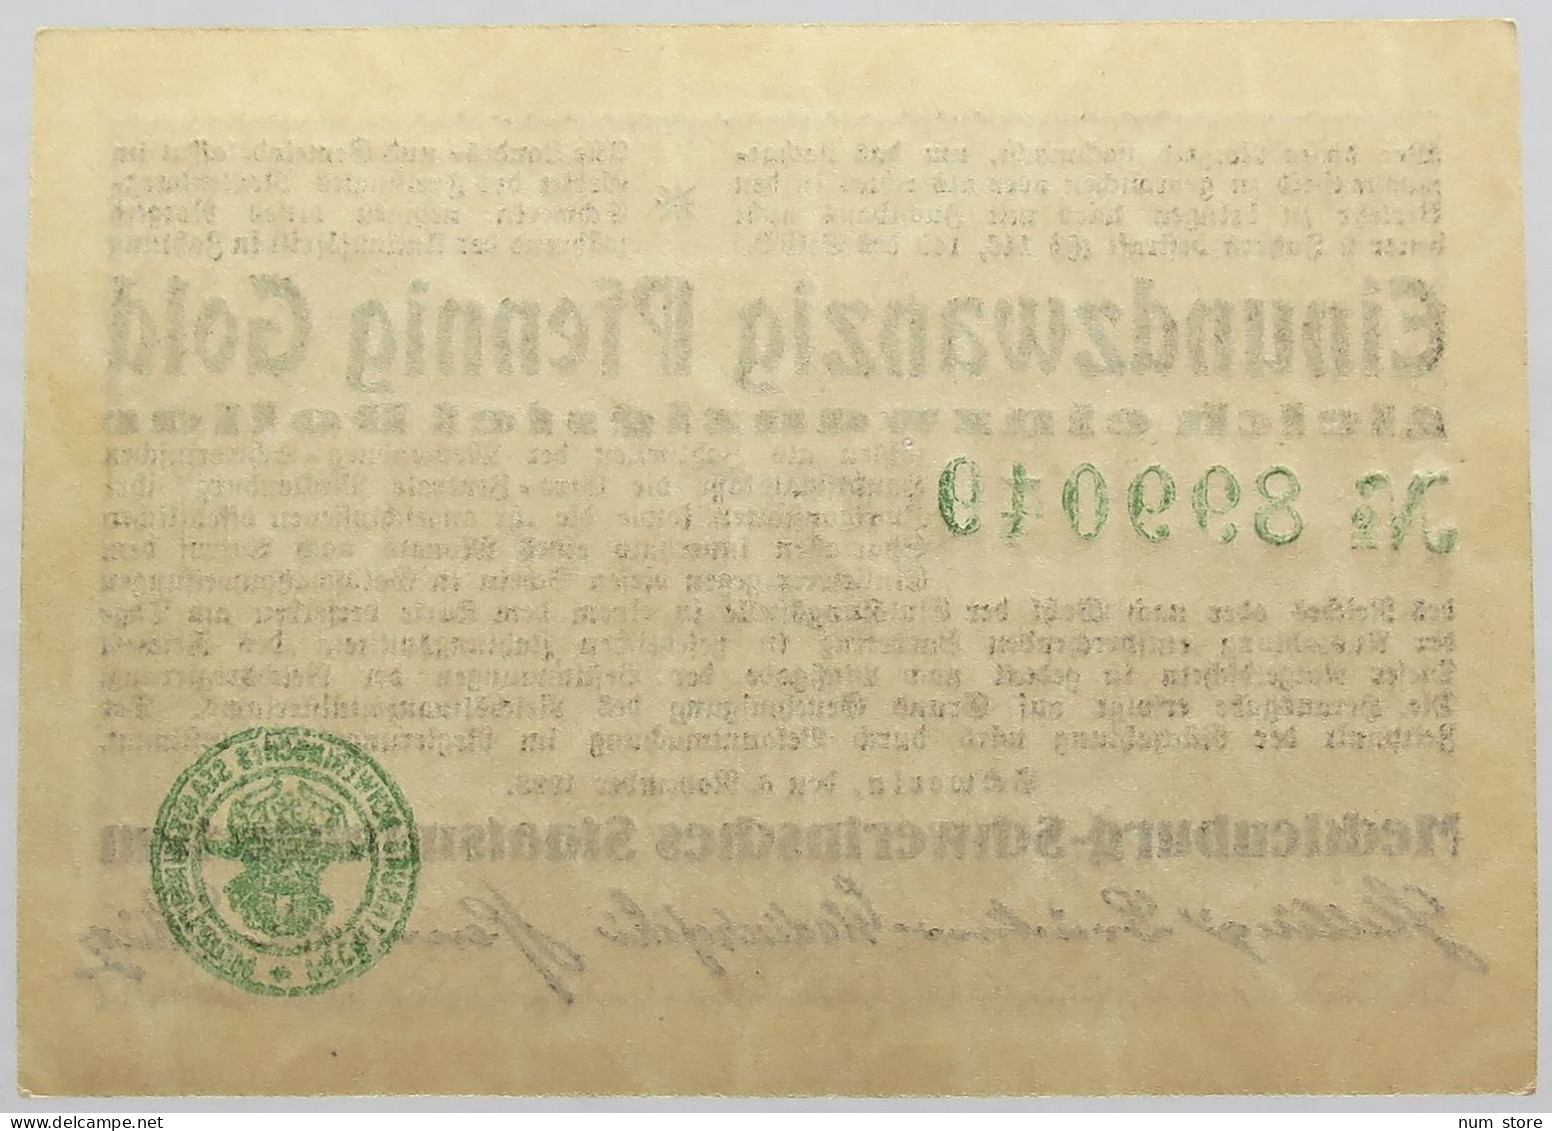 GERMANY 2.1 GOLDPFENNIG 1923 MECKLENBURG #alb008 0197 - Deutsche Golddiskontbank